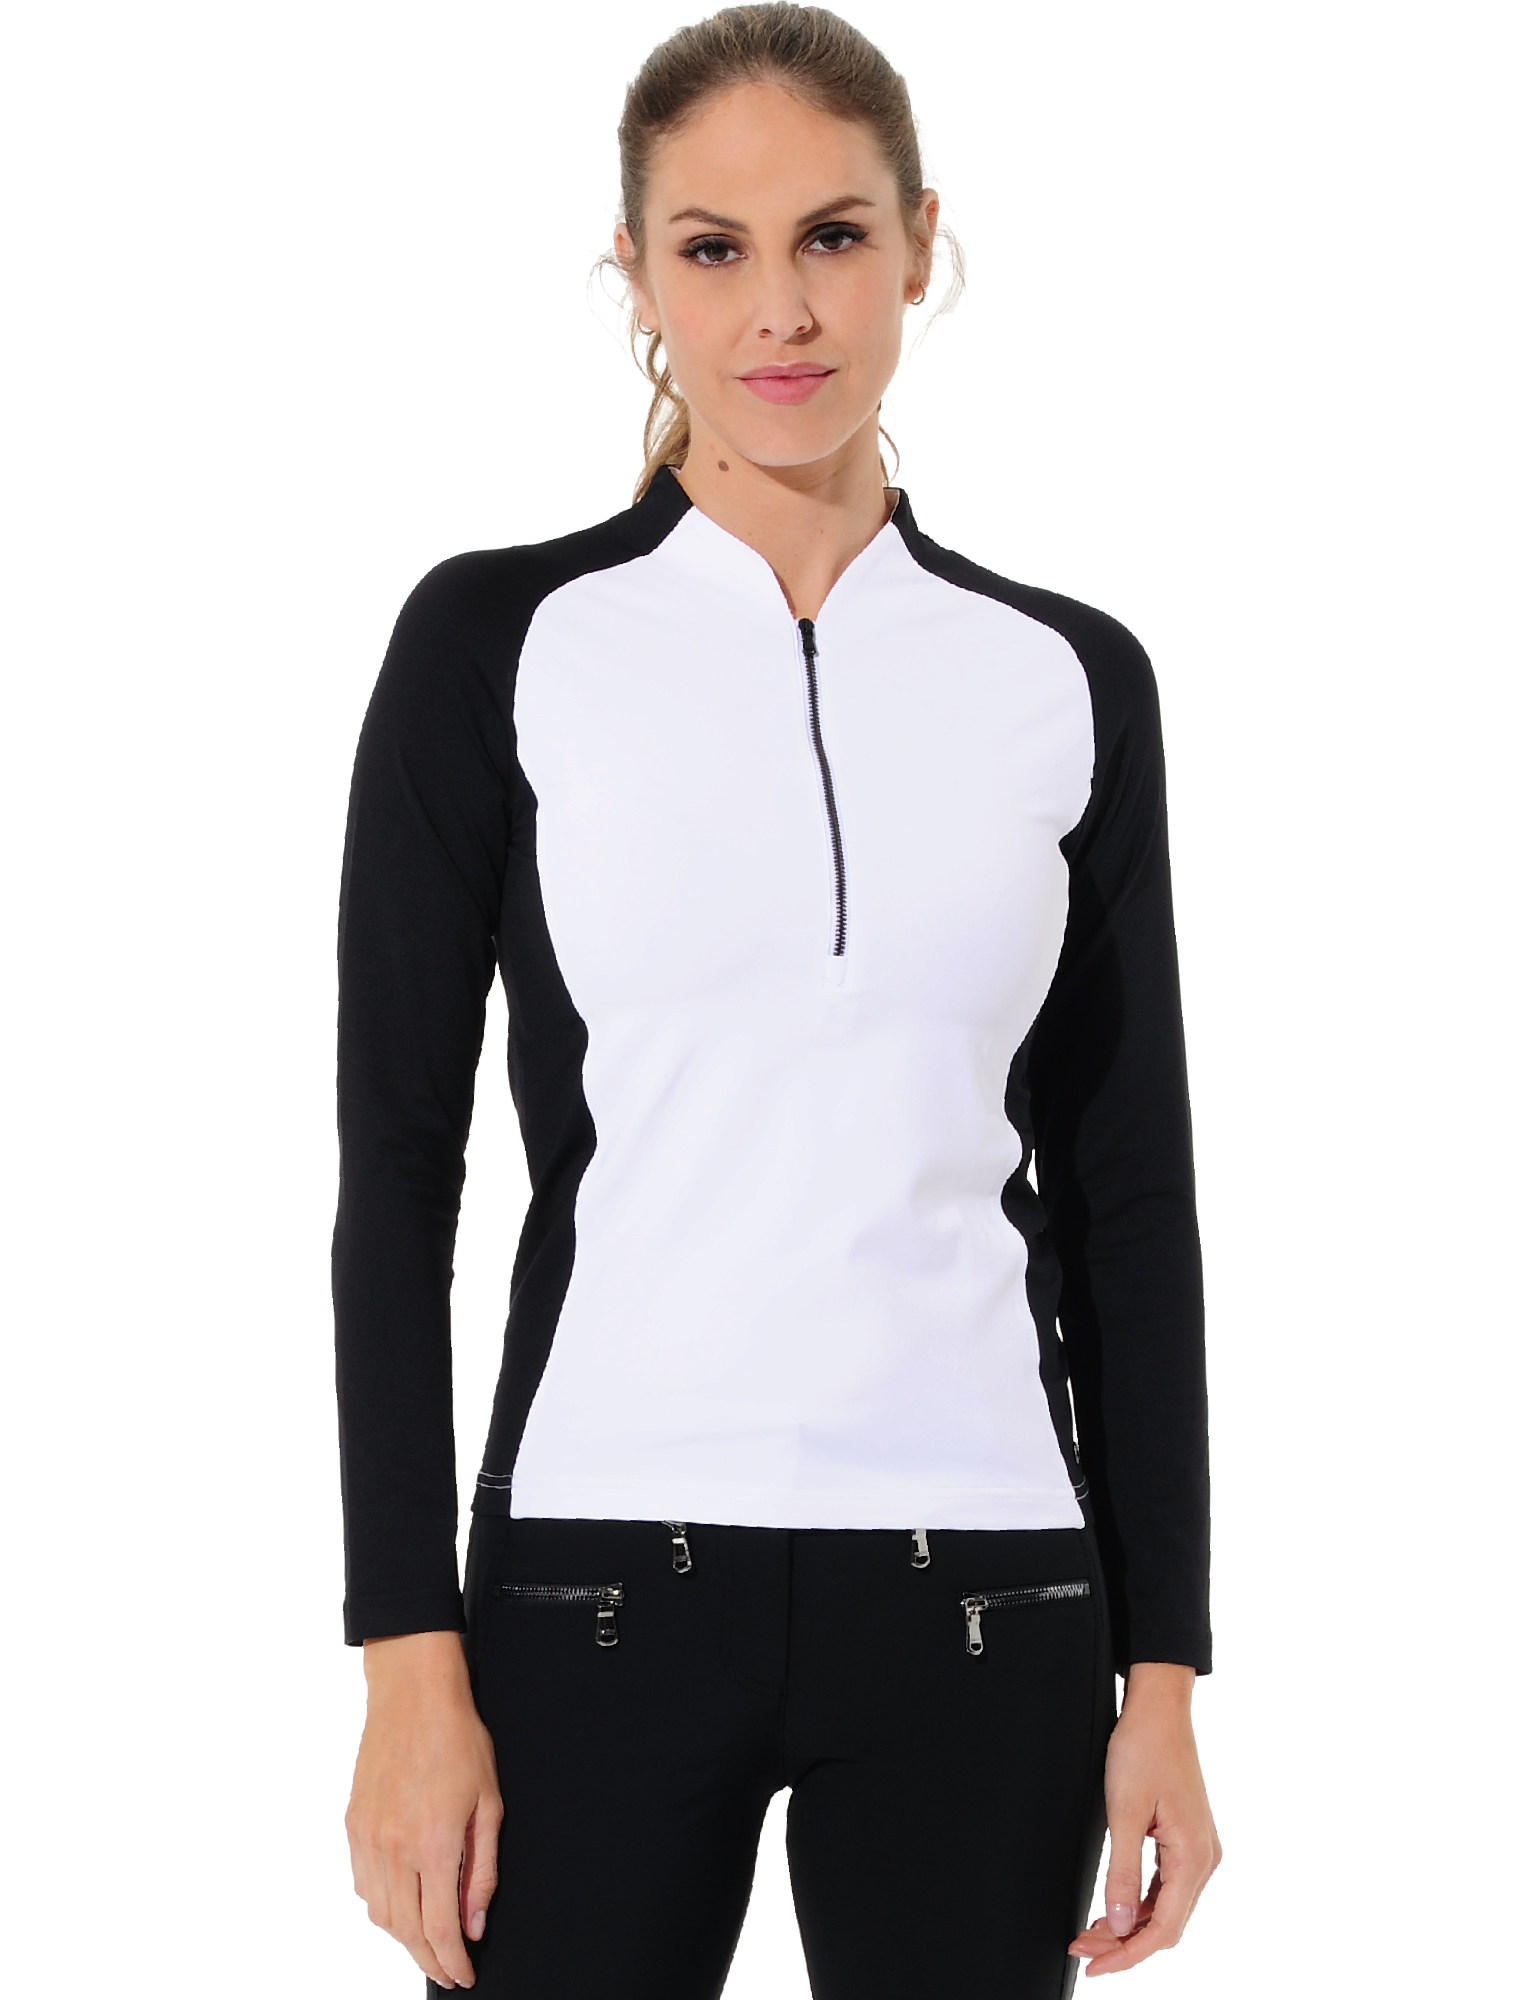 Jersey zip polo shirt white/black 